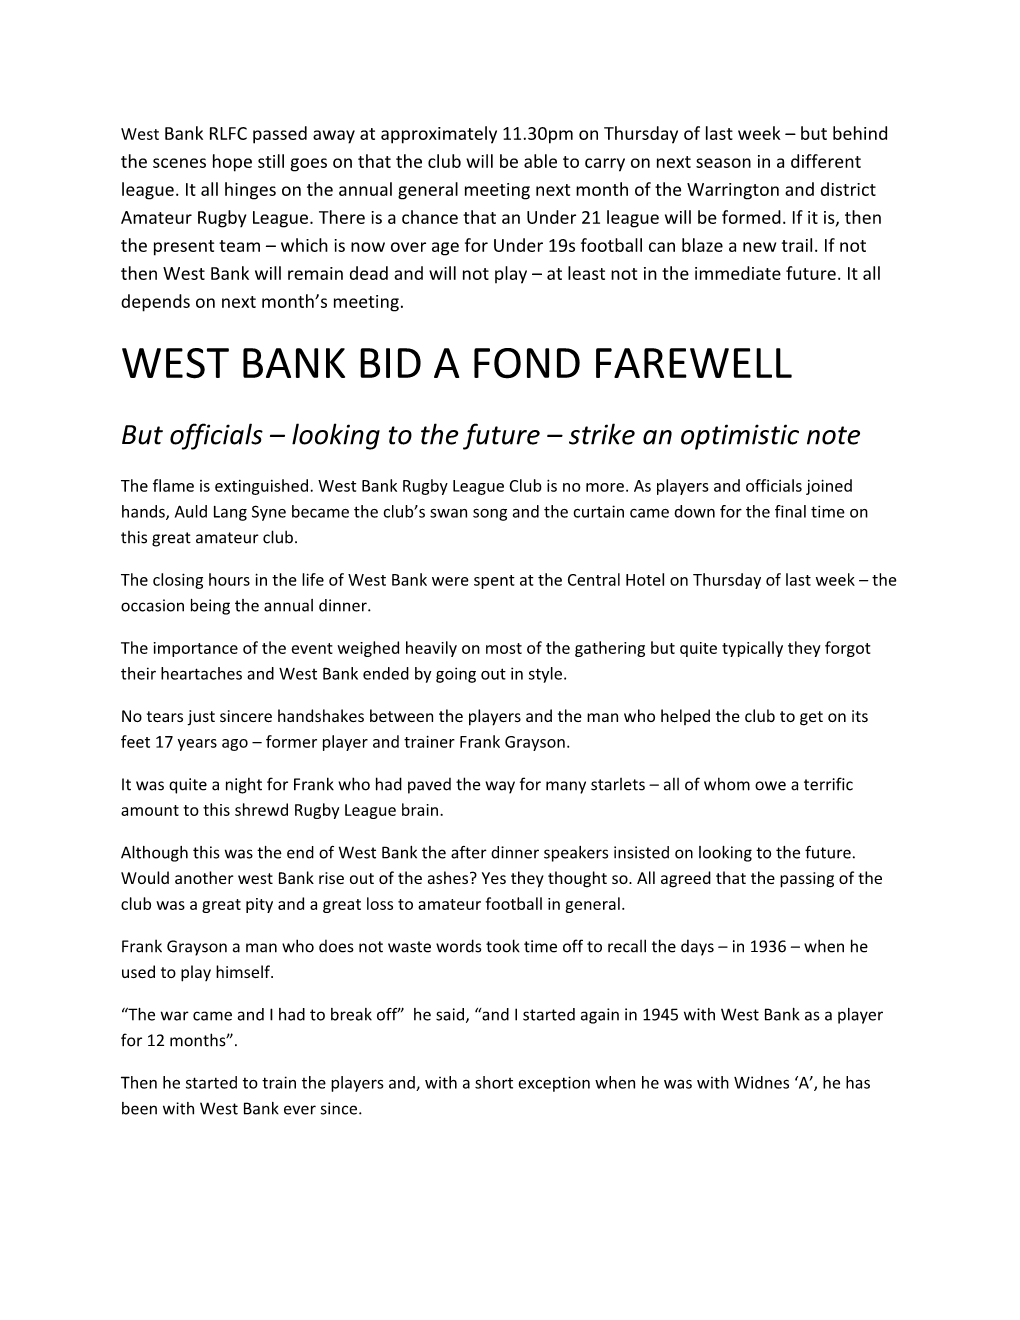 West Bank Bid a Fond Farewell